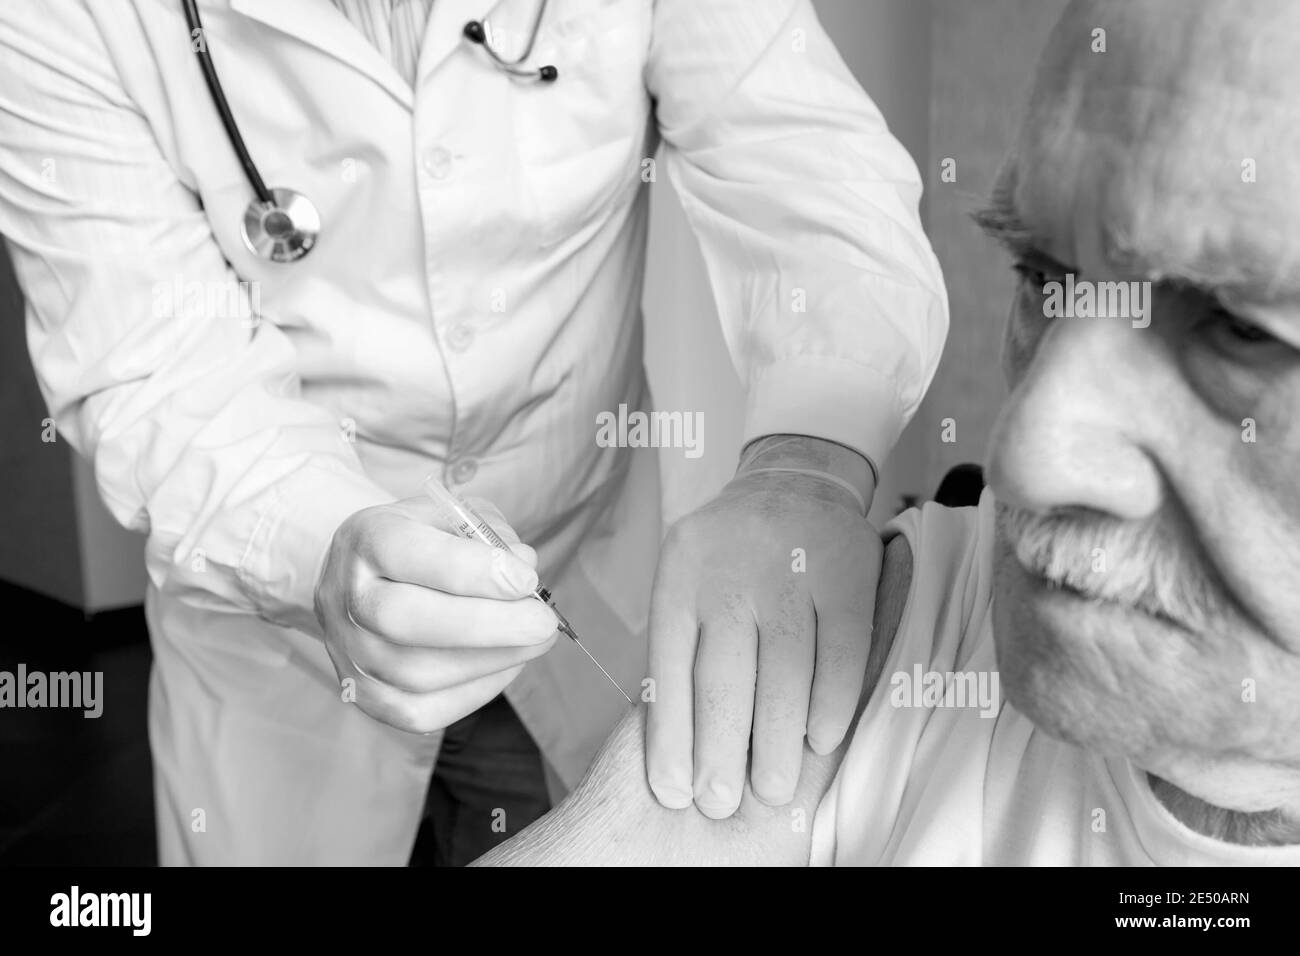 Impfung älterer Menschen gegen Viren. Ein Arzt gibt einem alten, weißhaarigen Mann eine Injektion des Impfstoffes covid-19. Der alte Mann sieht aus Stockfoto